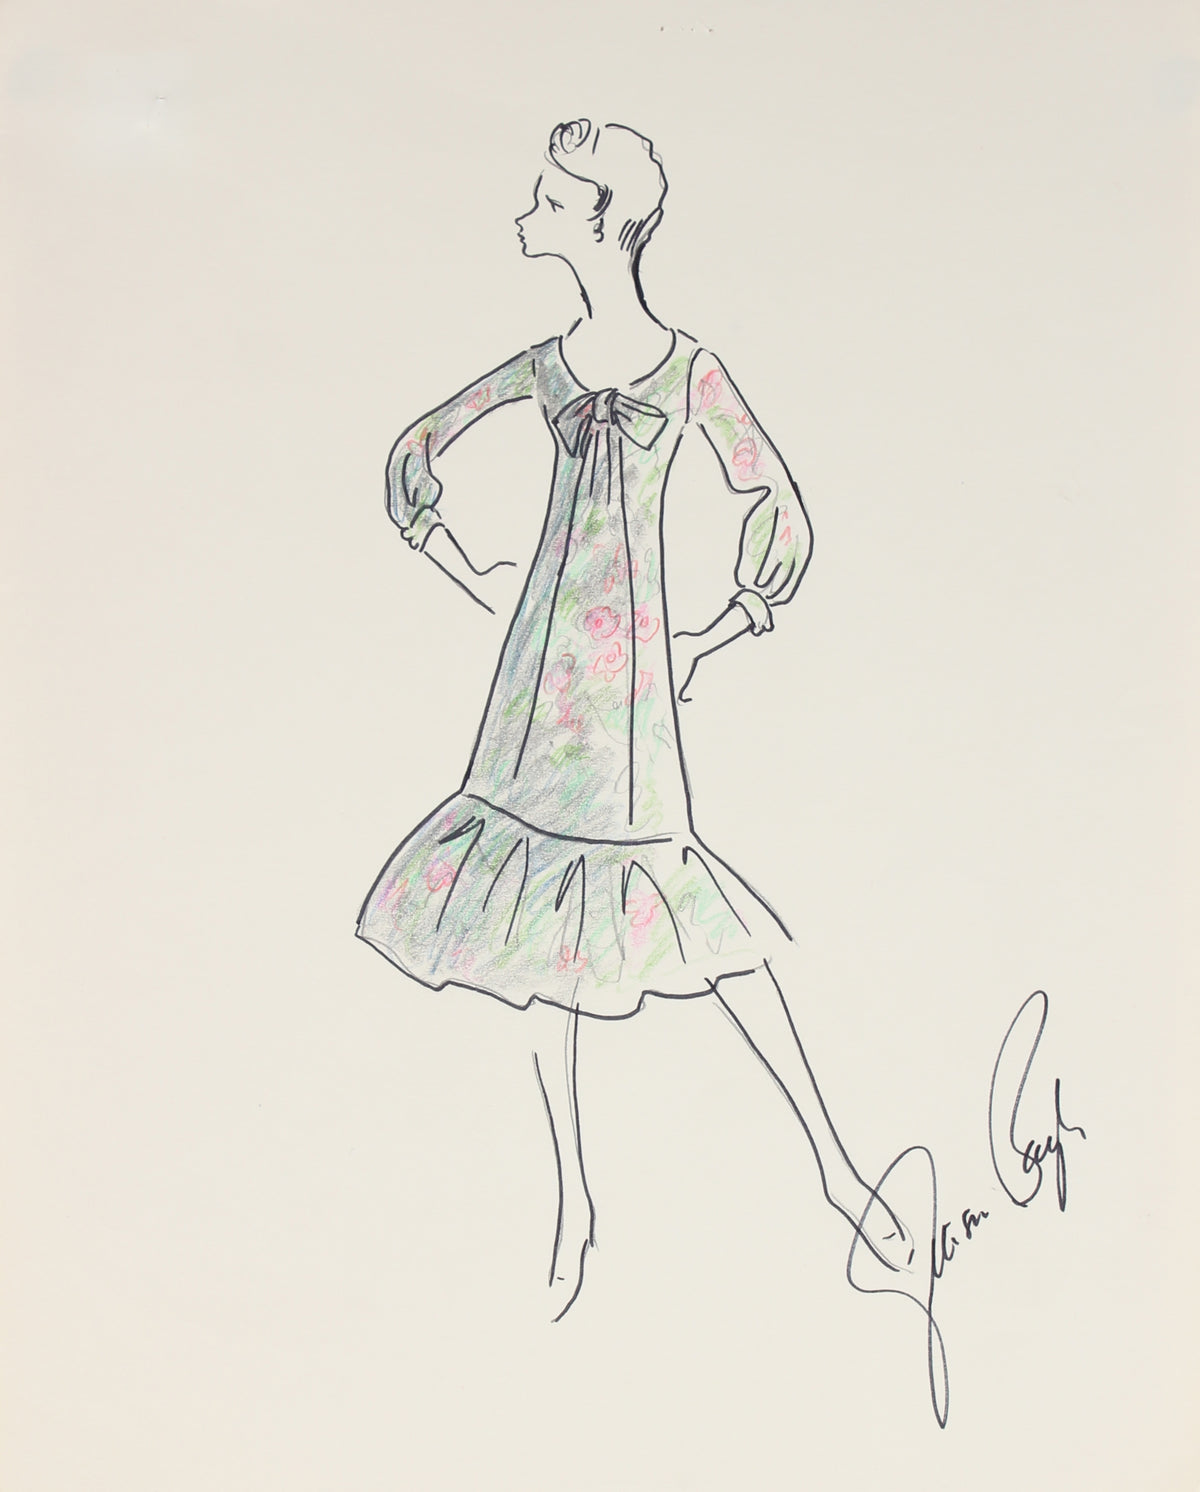 Flowy Dress with a Floral Pattern&lt;br&gt;1950s Fashion Illustration &lt;br&gt;&lt;br&gt;#27252